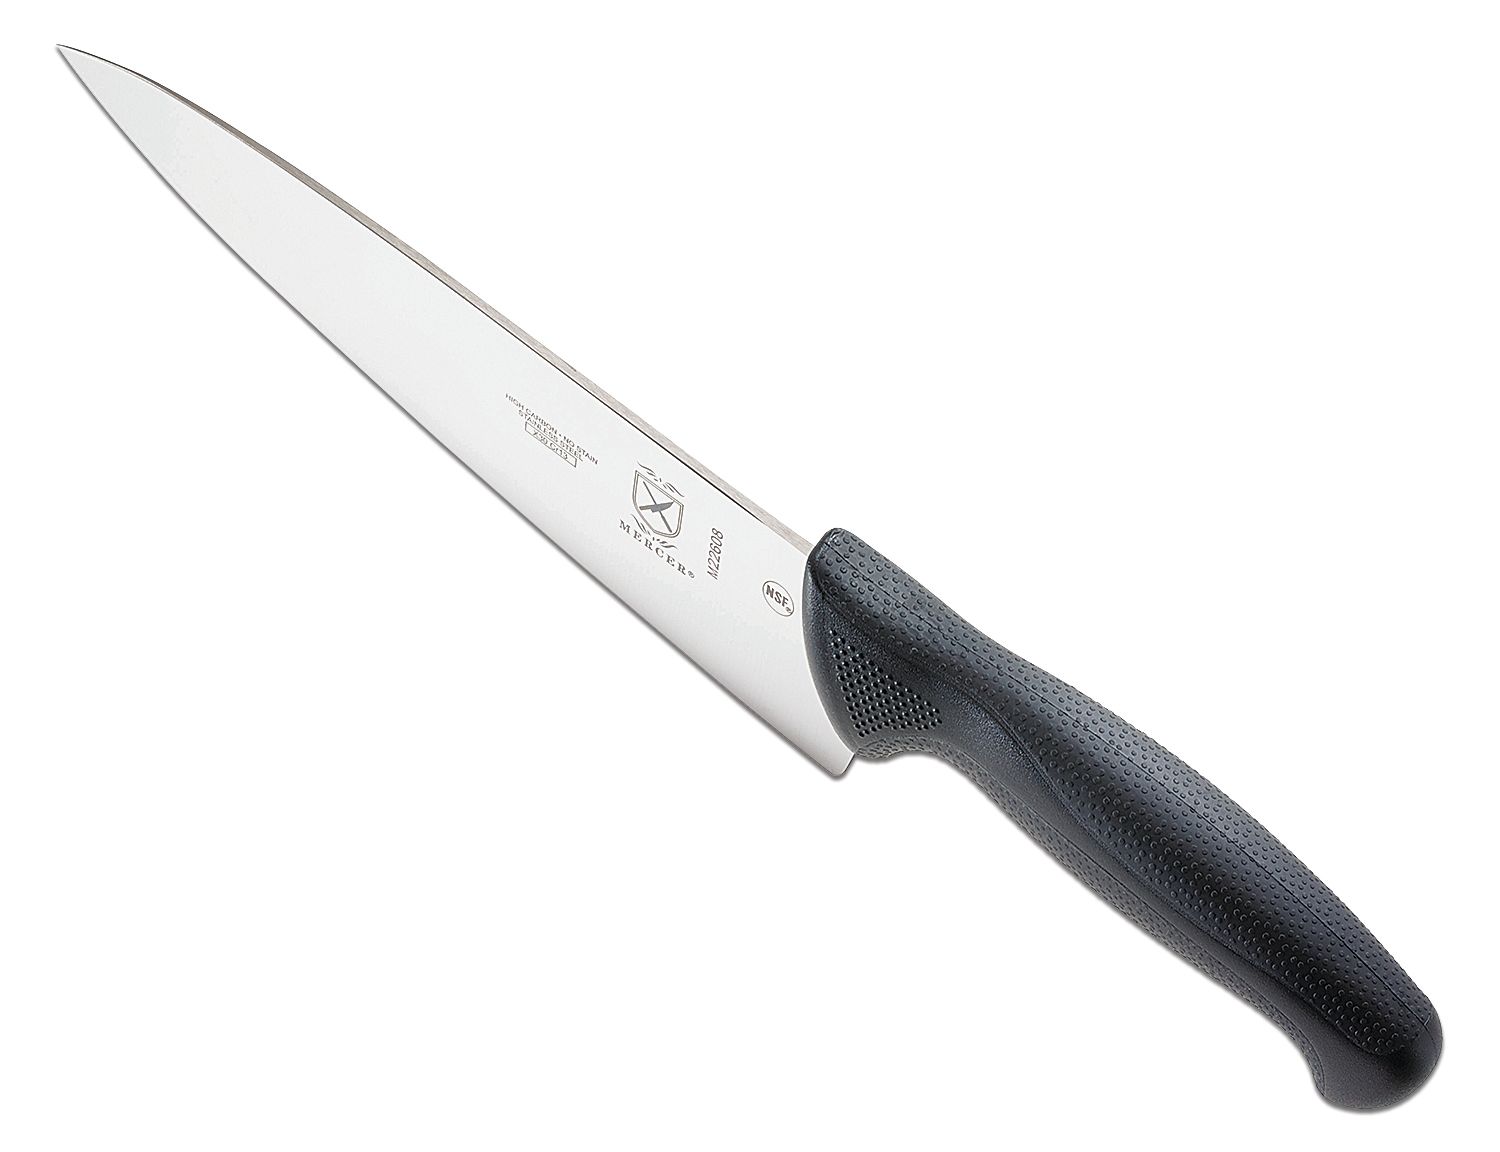 Mercer Cutlery Millennia 8 Chef's Knife - KnifeCenter - M22608